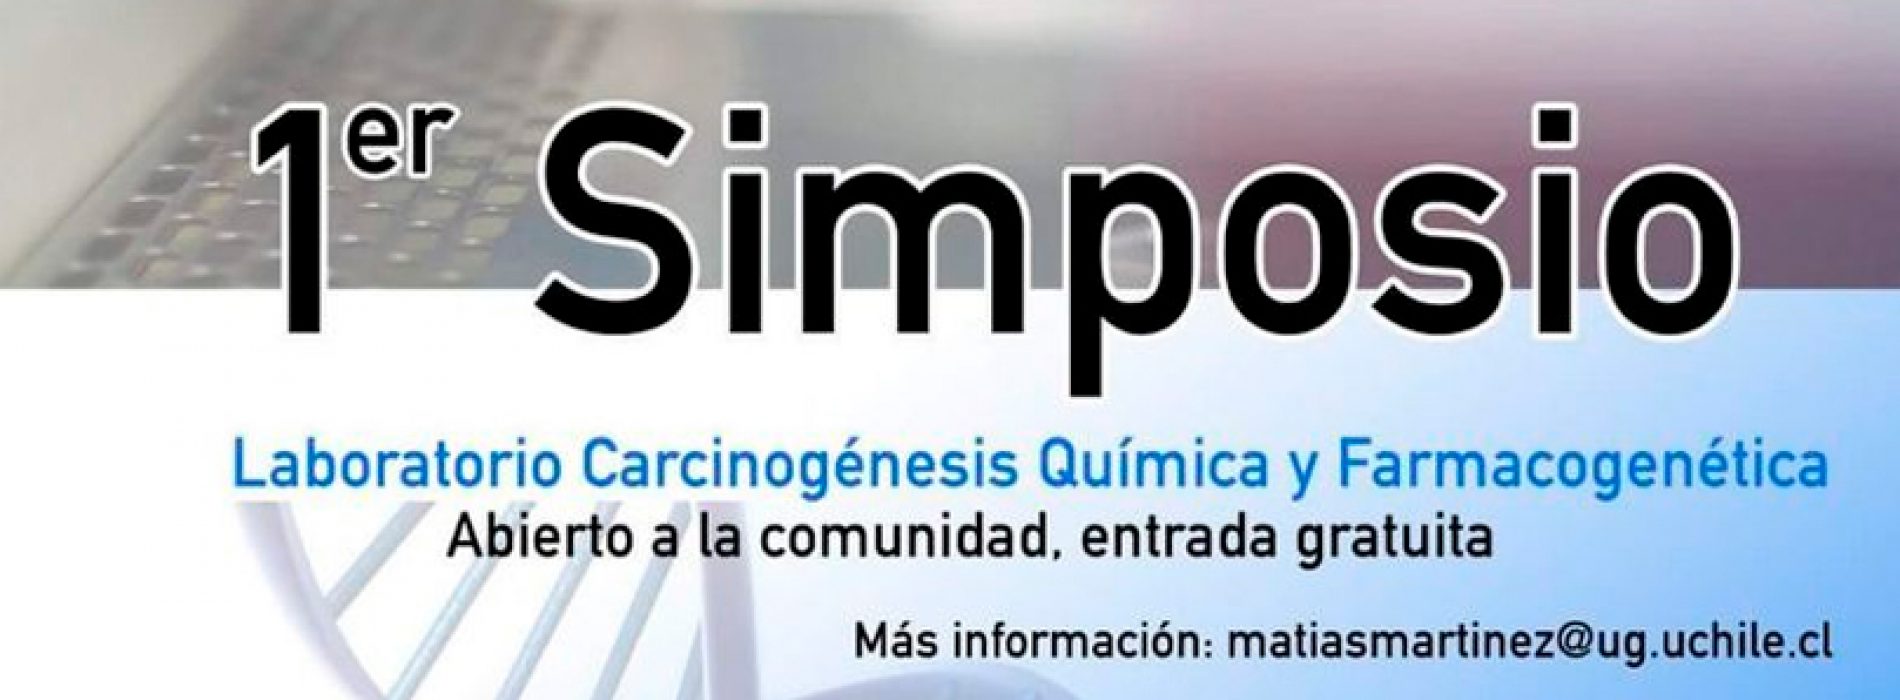 1st Symposium laboratory chemical Carcinogenesis and pharmacogenetics